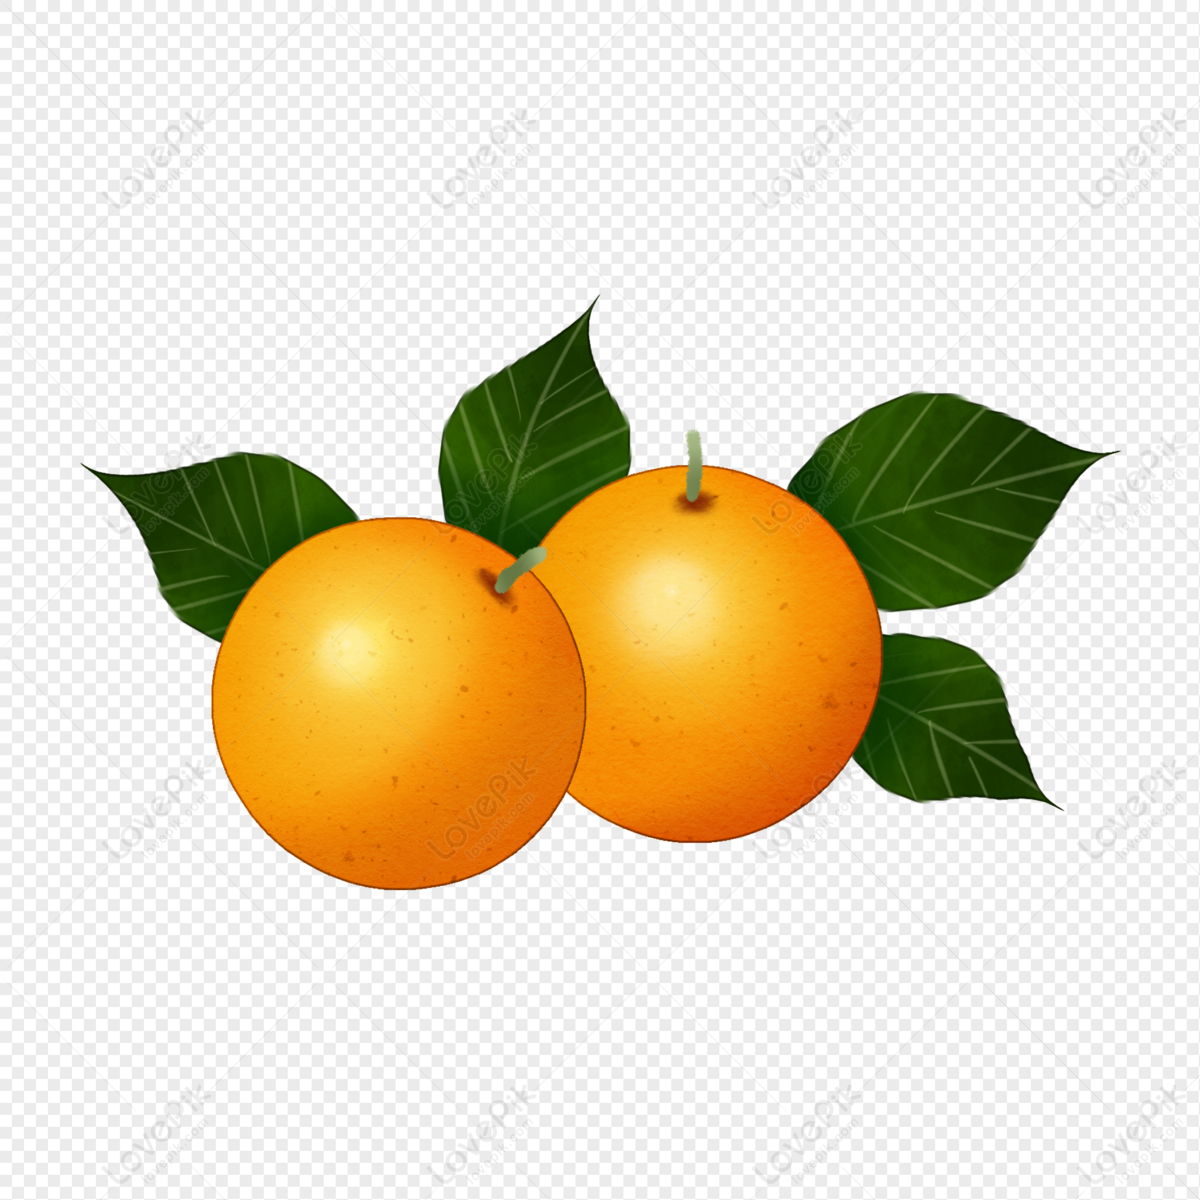 Cam - Two Oranges PNG Hd Transparent Image And Clipart Image For Free ... - Hình ảnh hoàn toàn miễn phí về hai quả cam đẹp mắt sẽ khiến bạn thích thú. Với độ hấp dẫn và nét tinh tế trong từng chi tiết, hình ảnh này rất thích hợp để sử dụng trong các dự án thiết kế hay vẽ tranh. Hãy tải về và sử dụng hình ảnh này để thể hiện tài năng nghệ thuật của bạn nhé!